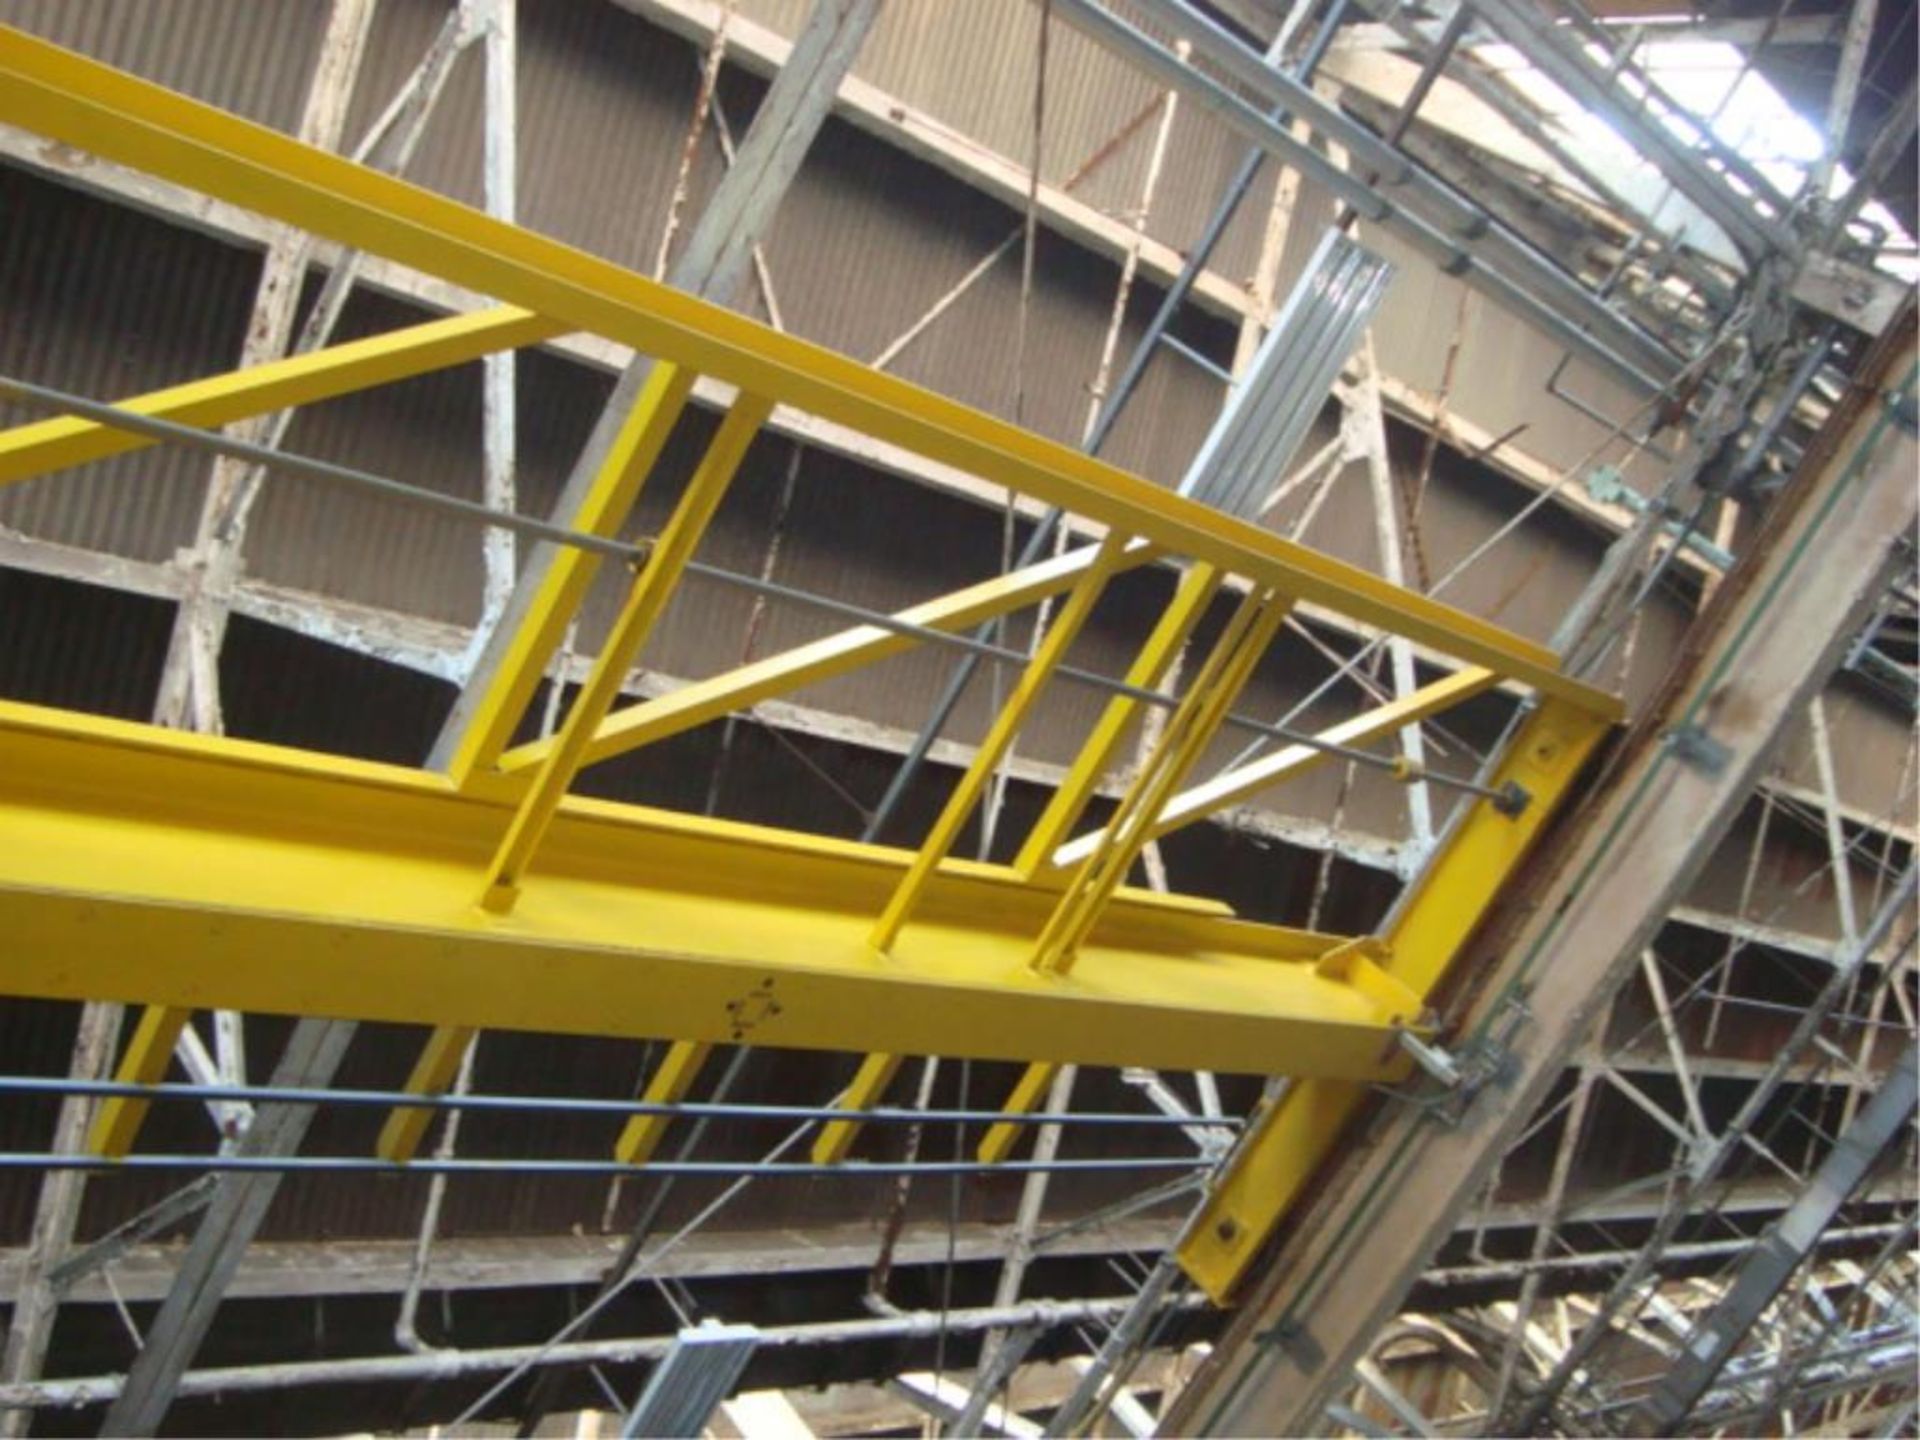 5-Ton Capacity Overhead Bridge Crane - Image 5 of 9